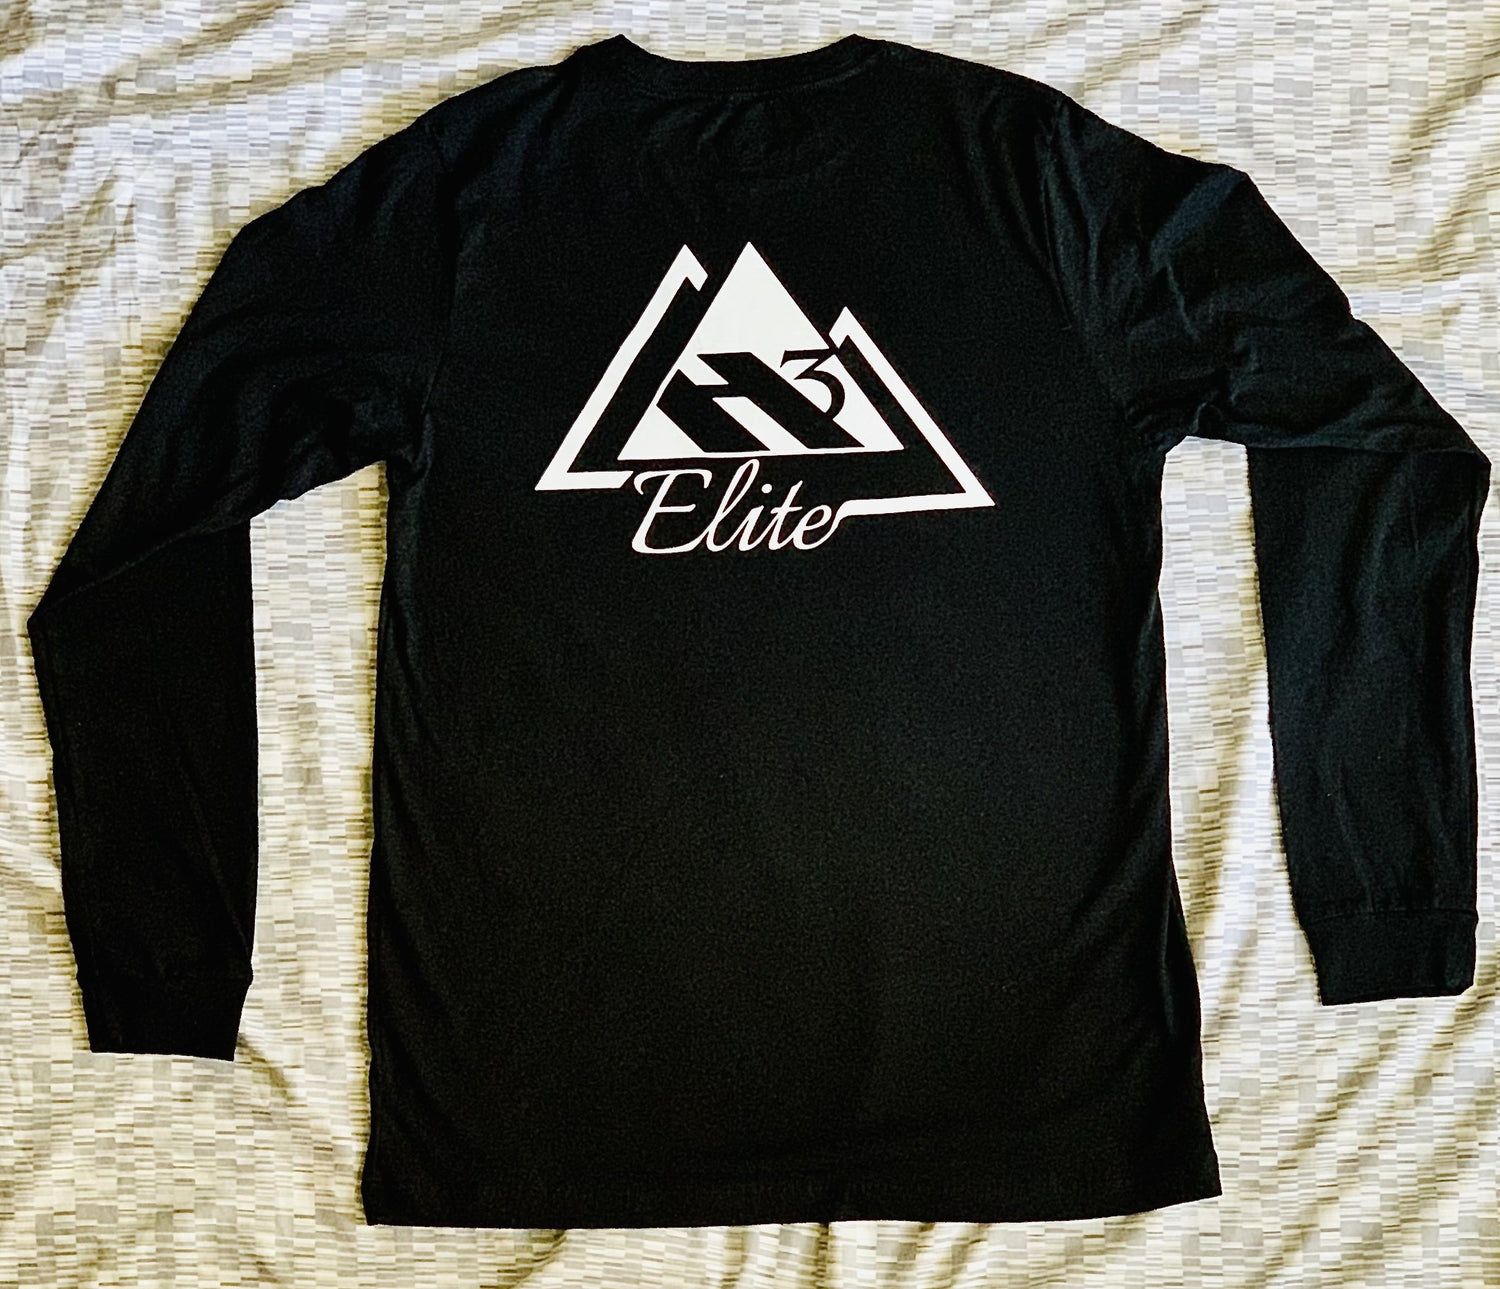 Black "Elite Onset" long sleeve t-shirt with white logo (back)